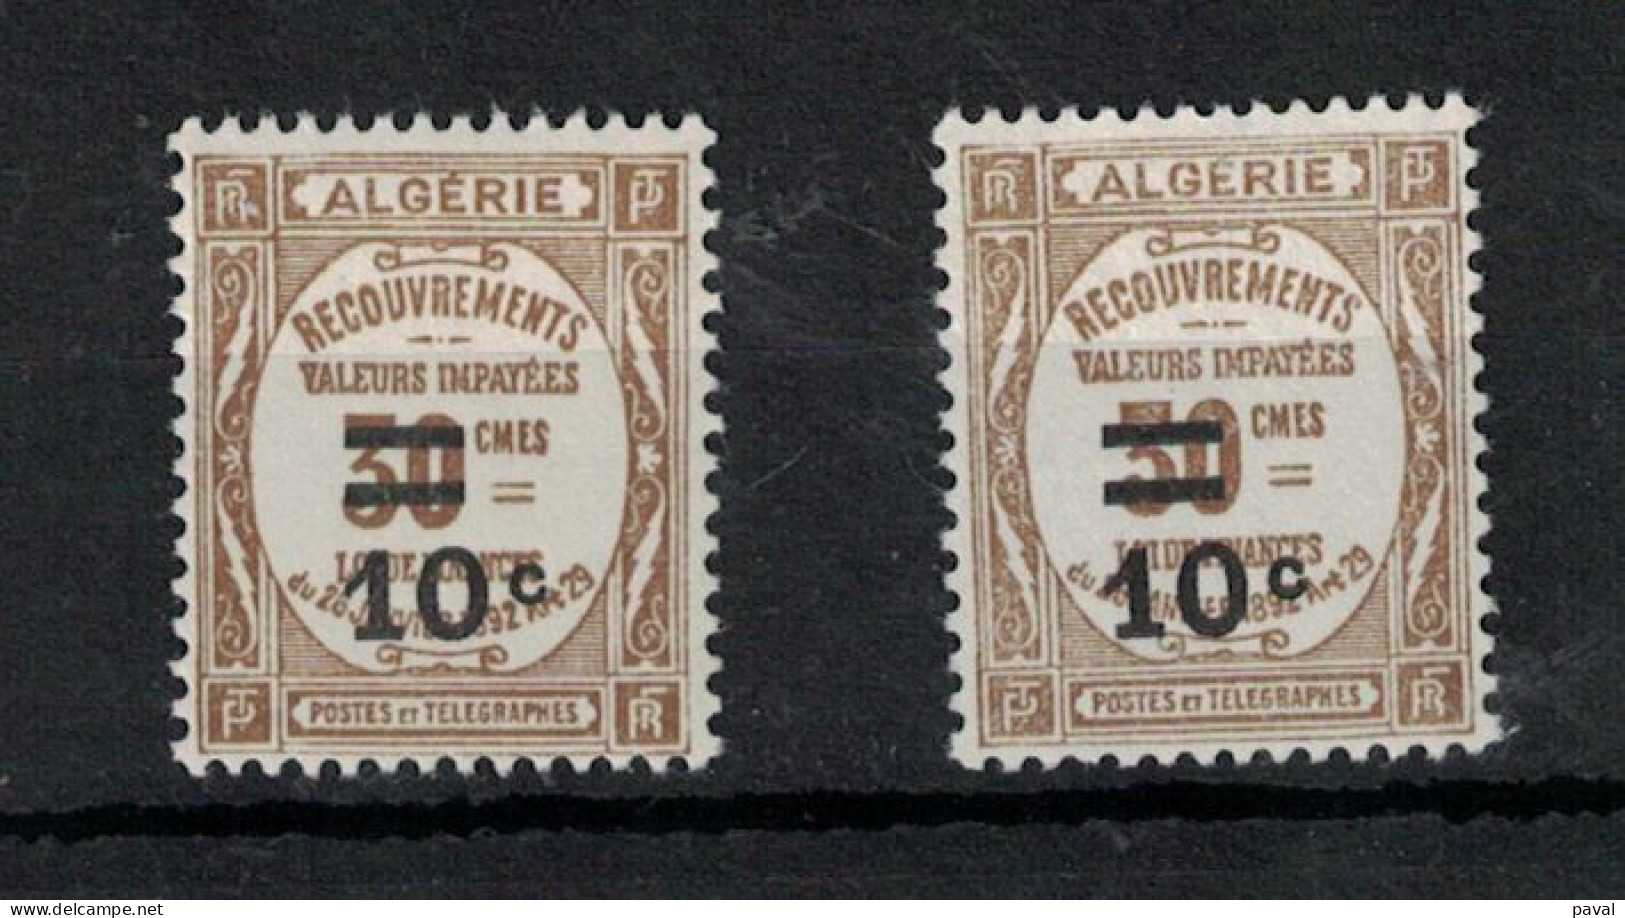 TAXE N°2 NEUF**MNH + N°2 (*) SG, COTE 16,50€, ALGERIE, 1926/32. - Impuestos